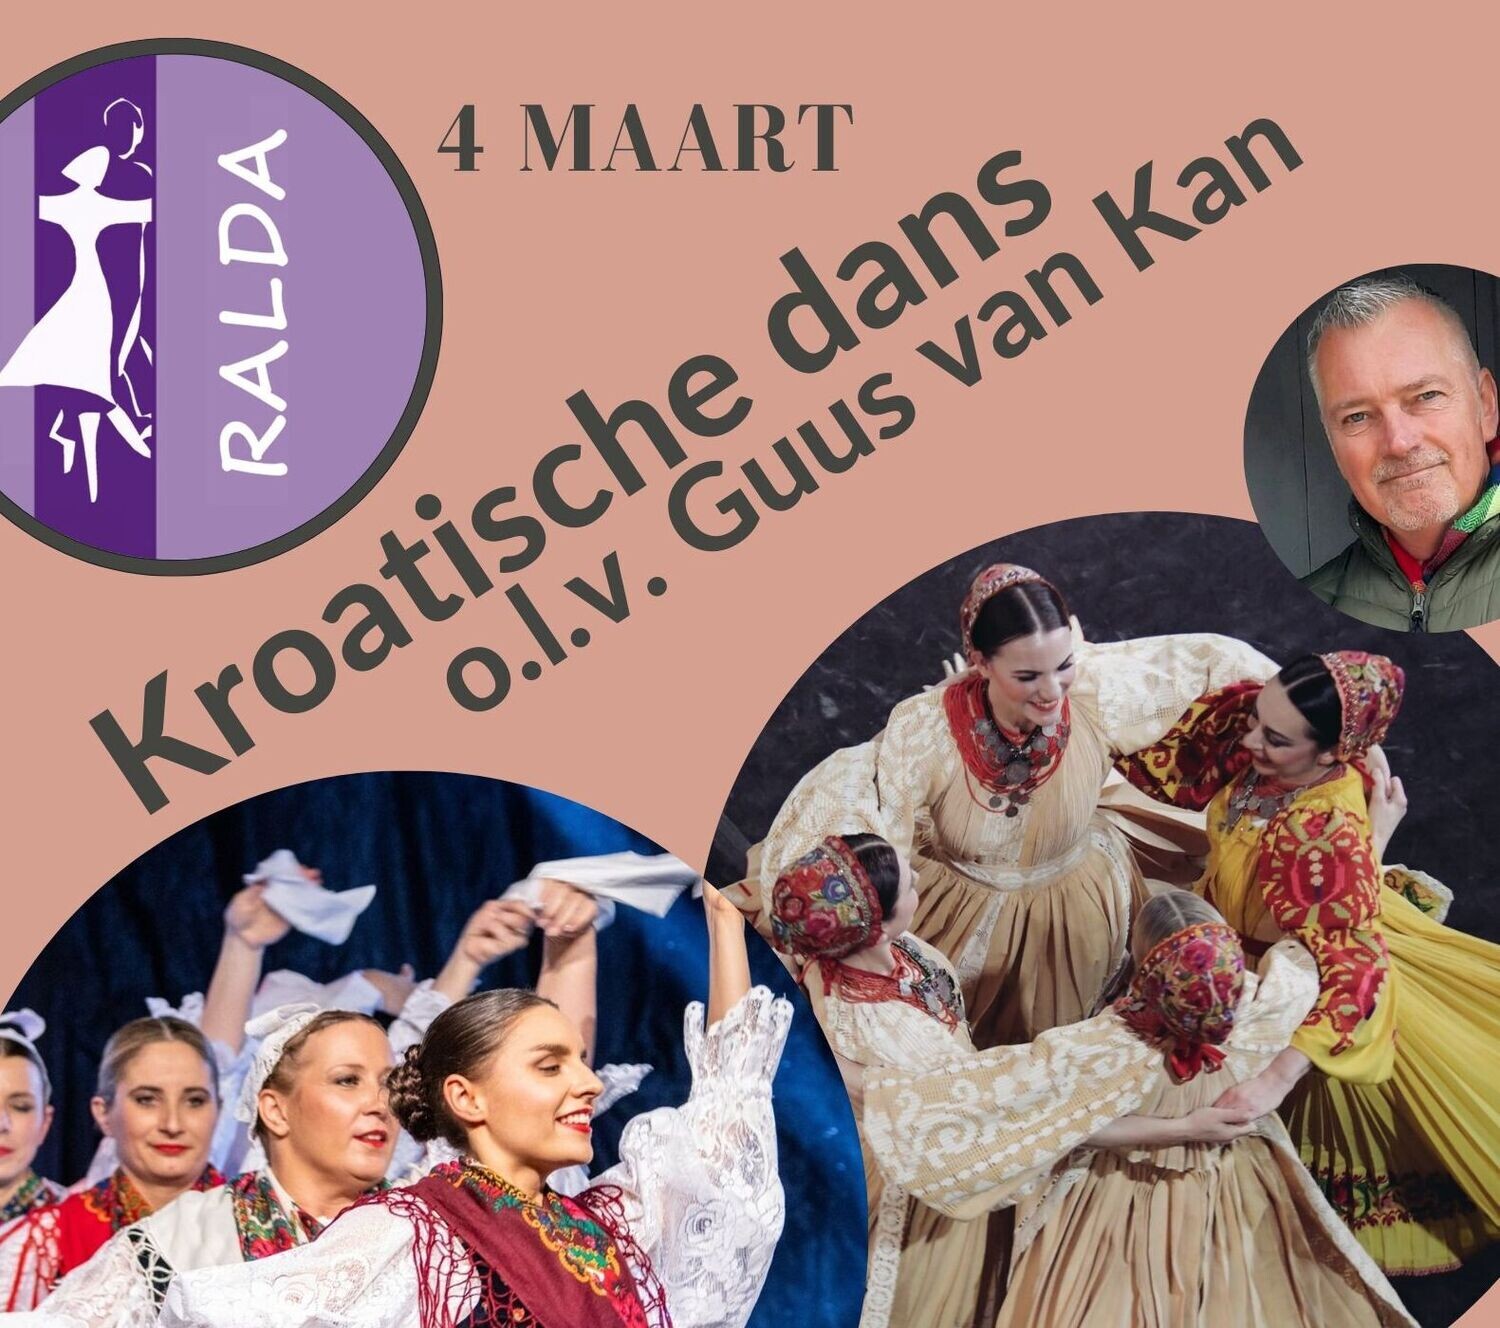 4 maart - Workshop Kroatische dans met Guus van Kan (ALLEEN RESERVEREN)